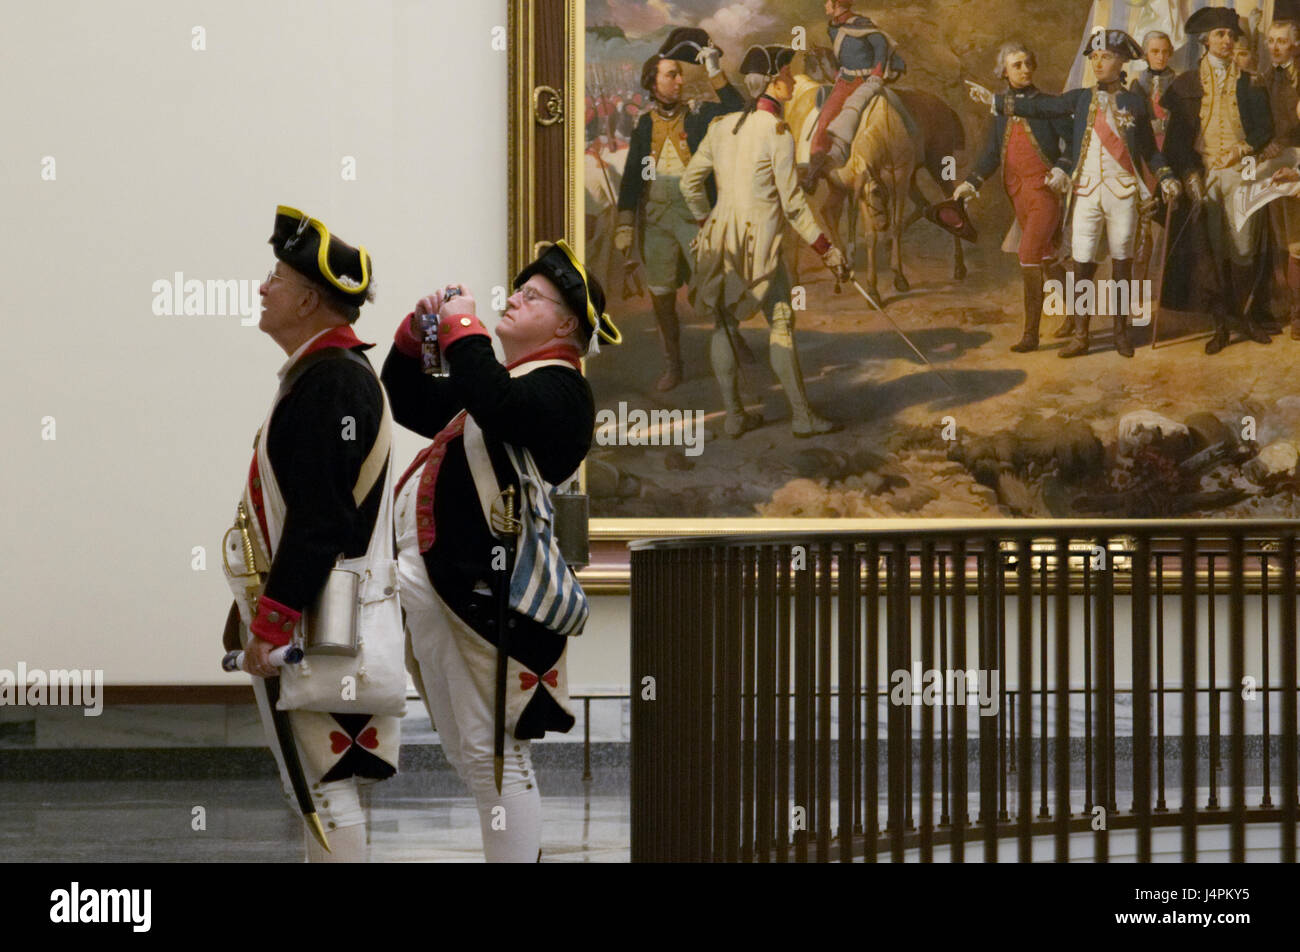 La guerre révolutionnaire de reconstitution historique admirer l'exposition, à une visite du musée de la Révolution américaine, à Philadelphie, PA. Banque D'Images